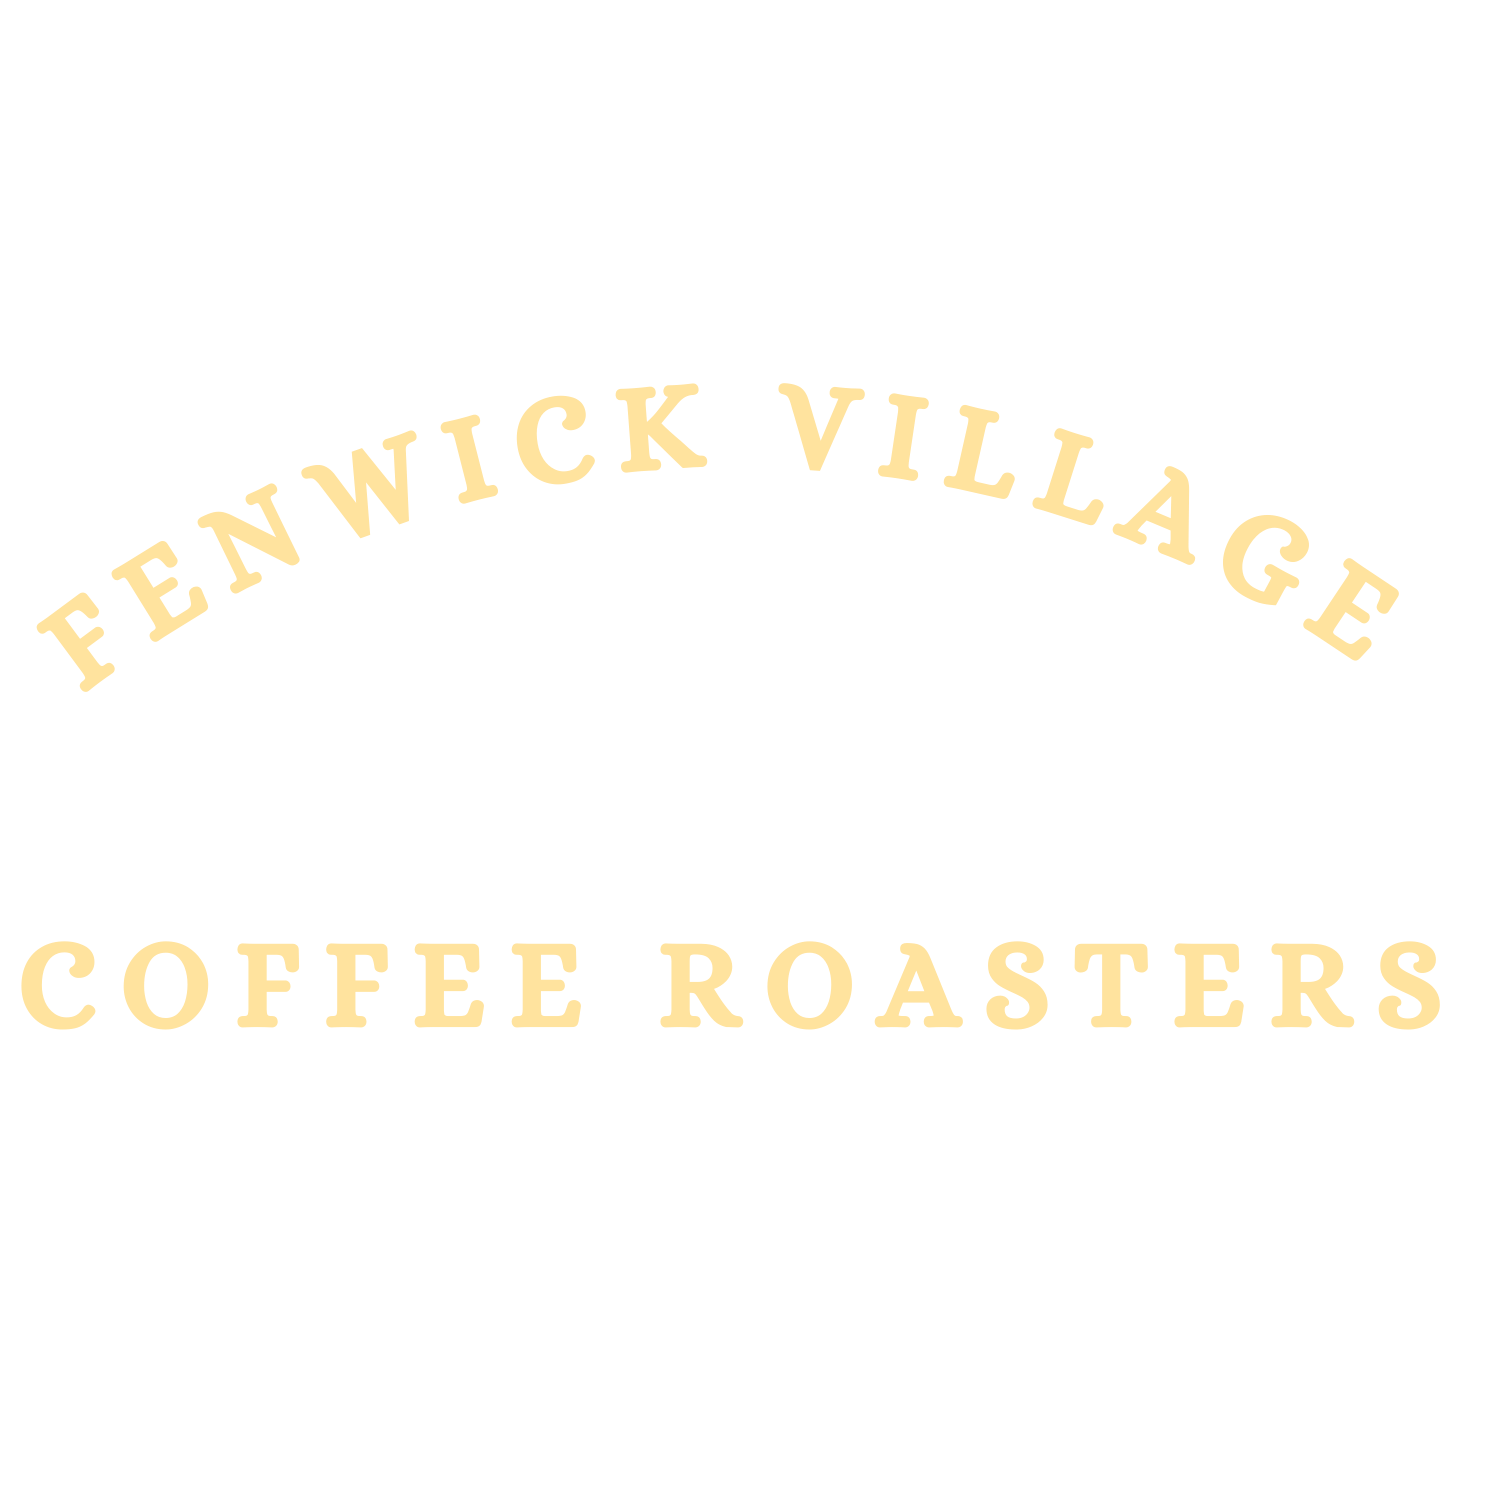 Fenwick Village Coffee Roasters